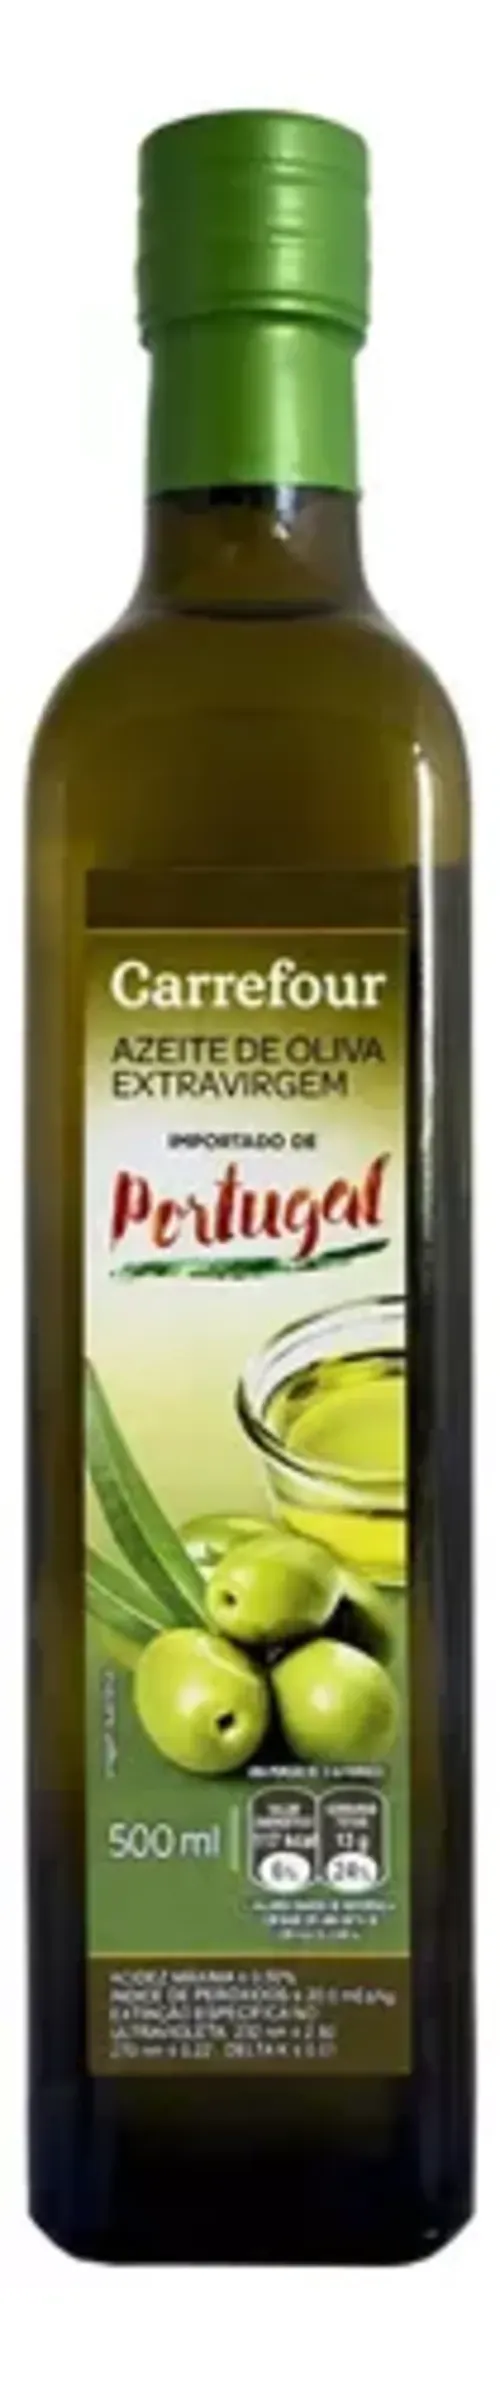 Azeite Portugus Extra Virgem Carrefour Frutado 500ml